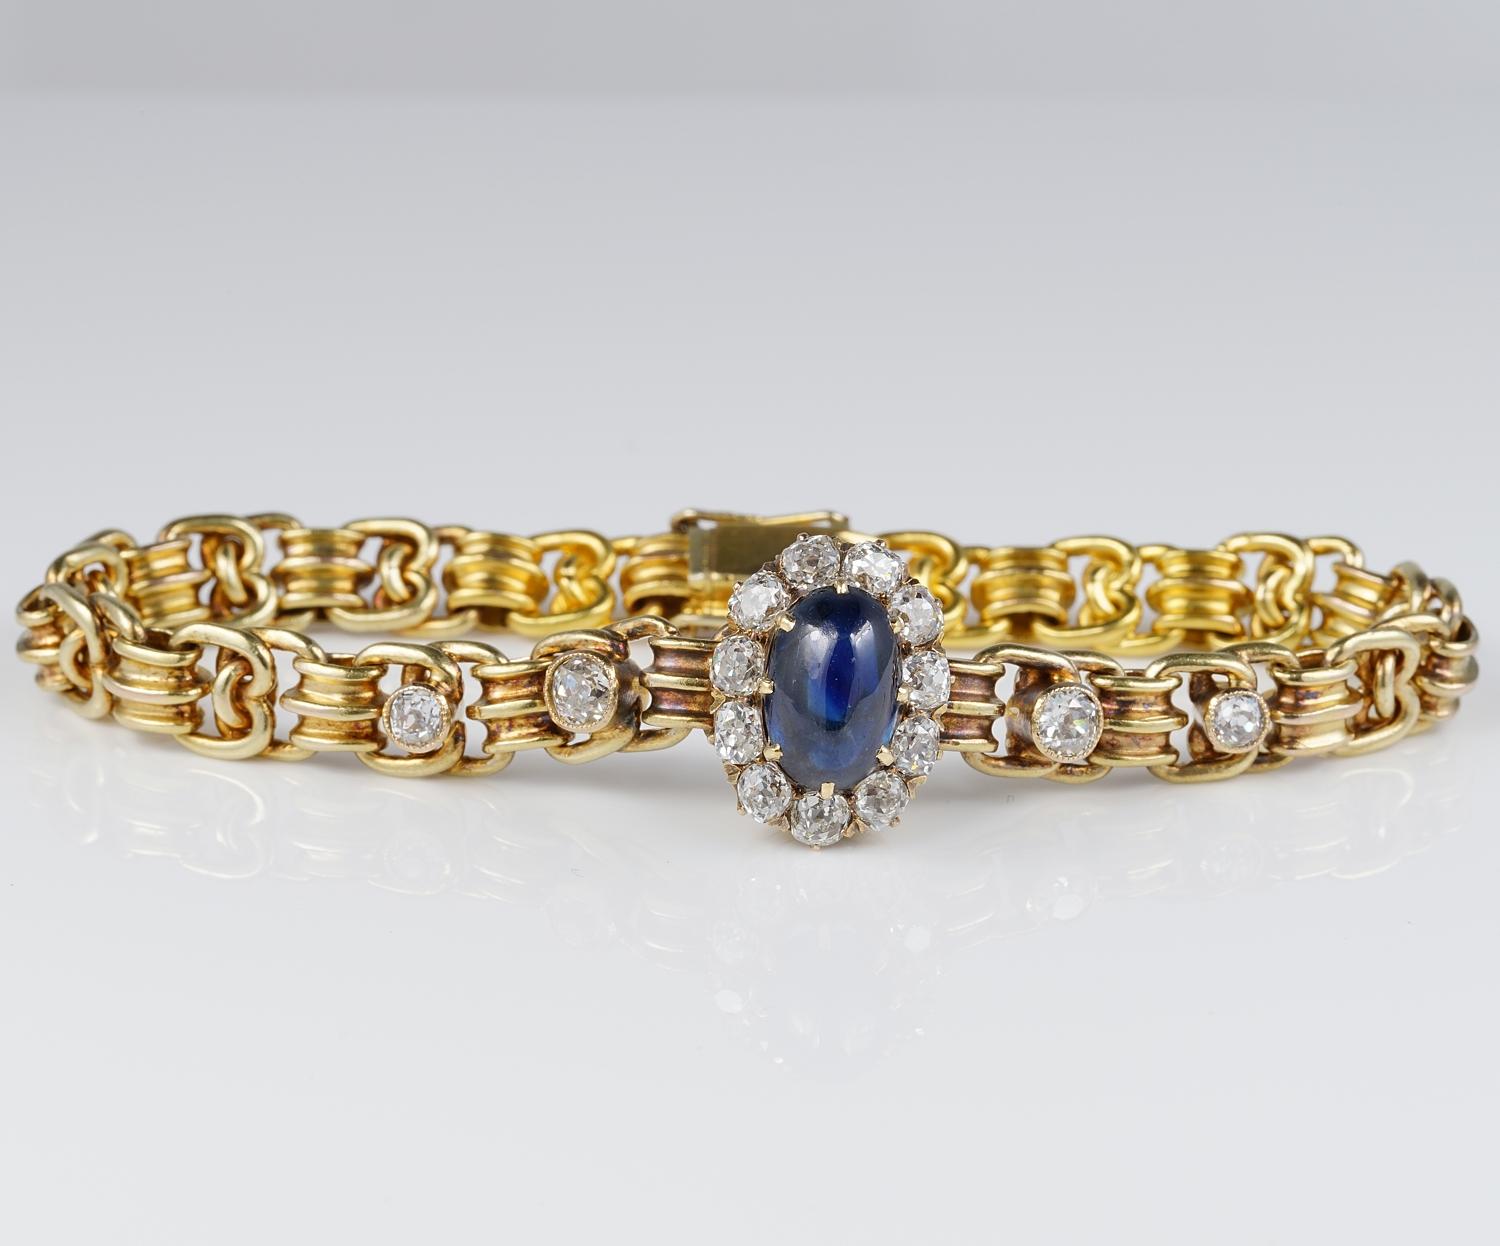 Absolut atemberaubend 1910 ca Russisch Armband, 14 Kt massivem Gold
Hervorragende Handwerkskunst der Ära, ineinander verschlungene Glieder, die zu einem zentralen Cluster mit reichem Diamantbesatz führen, der einen seltenen, nicht erhitzten,